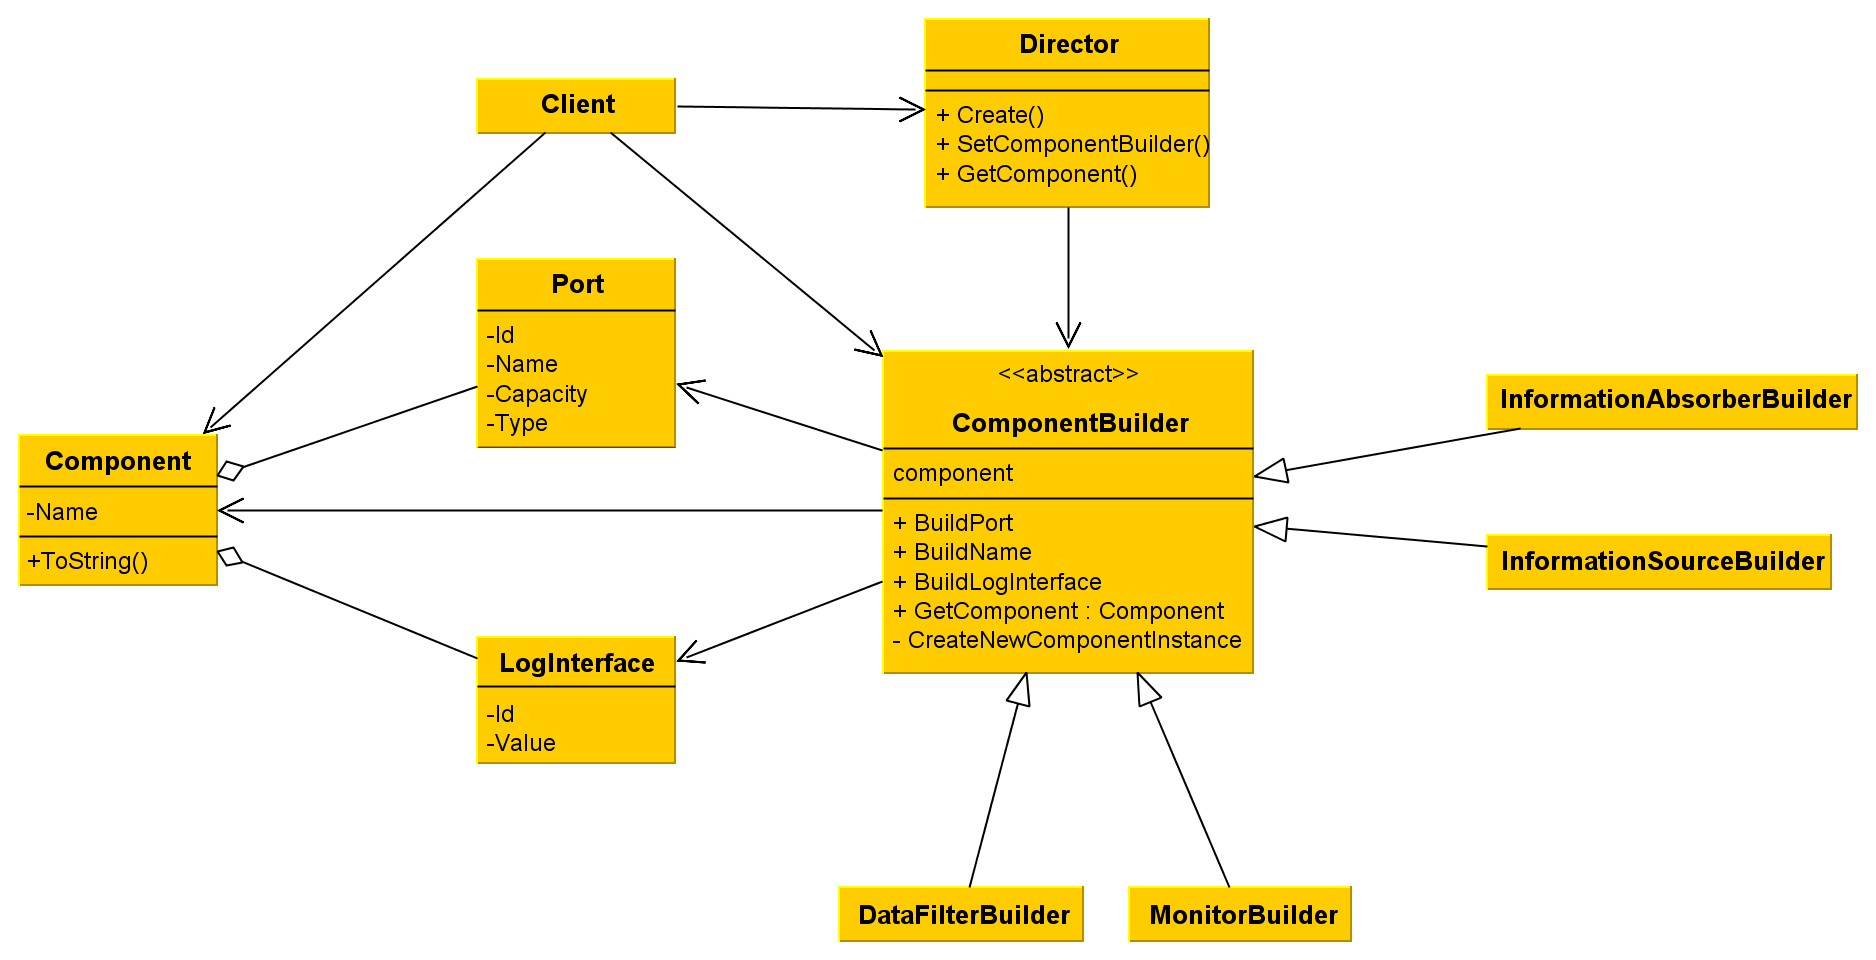 A feladat osztálydiagramja A ComponentBuilder absztrakt osztály ismeri a Component osztály részeit és tartalmazza a Component osztály részeit előállító metódusokat.